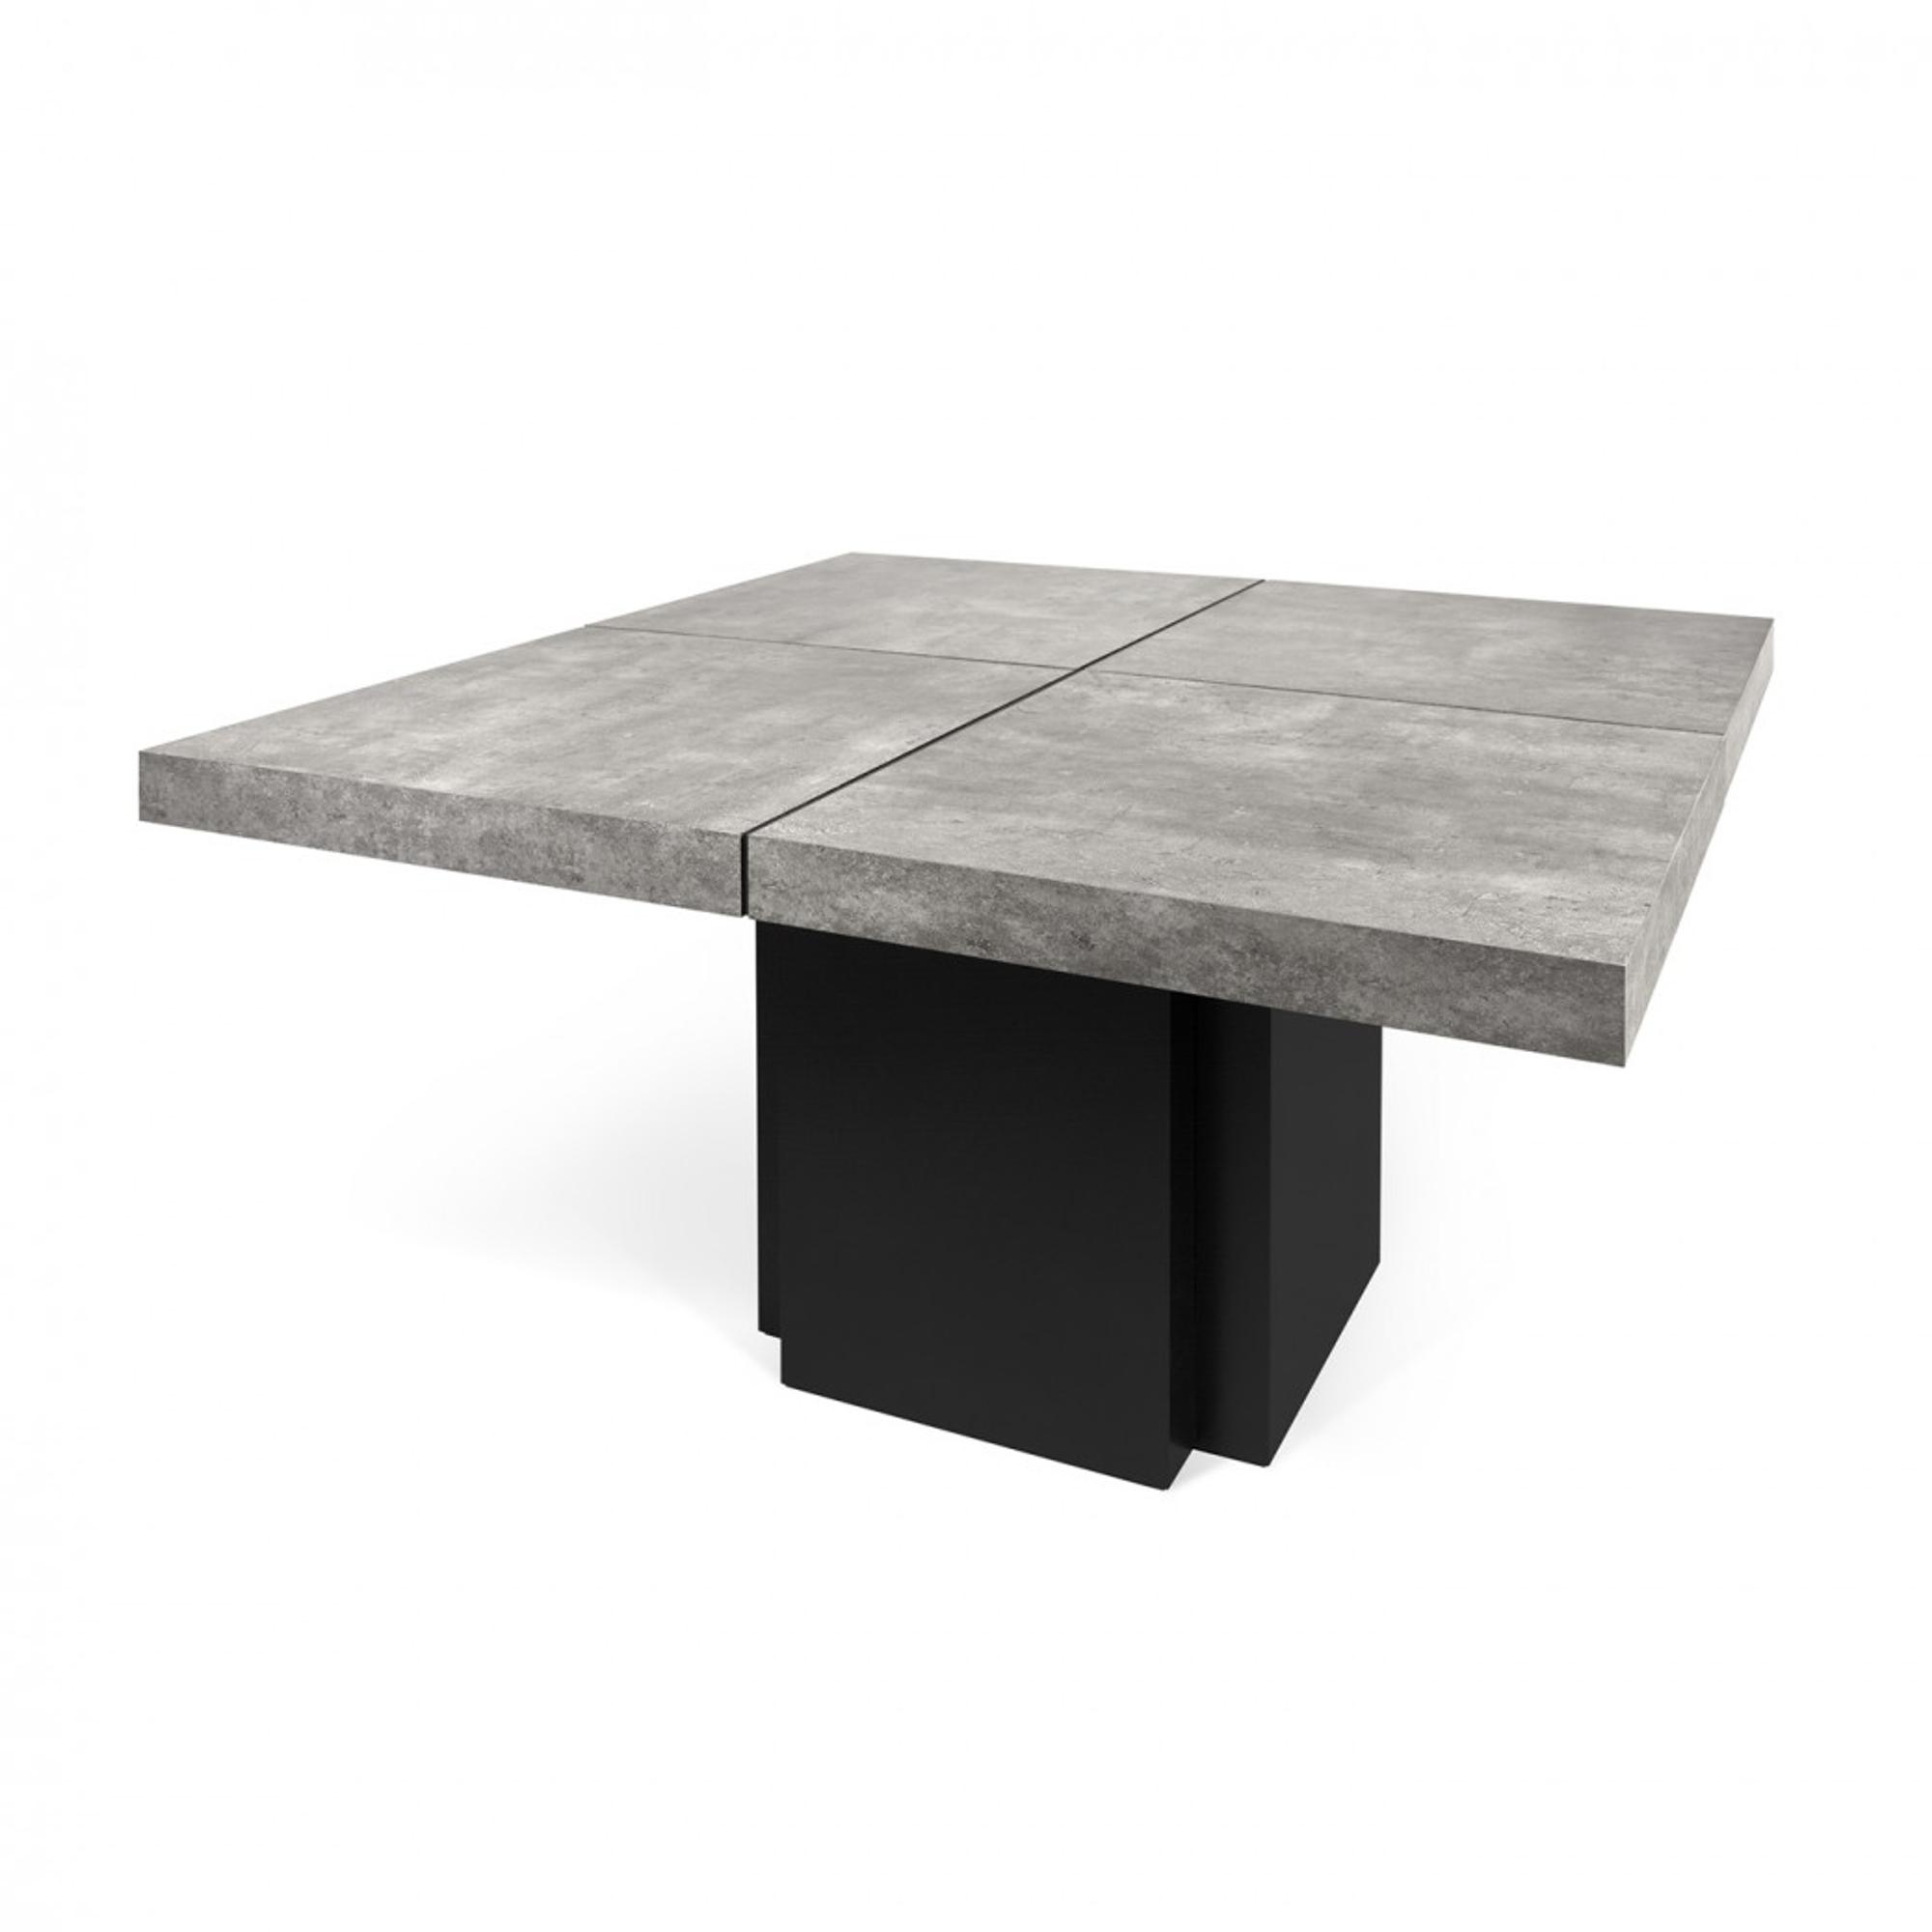  Spisebord - Dusk - grå fra Temahome (Varenr: 654087)